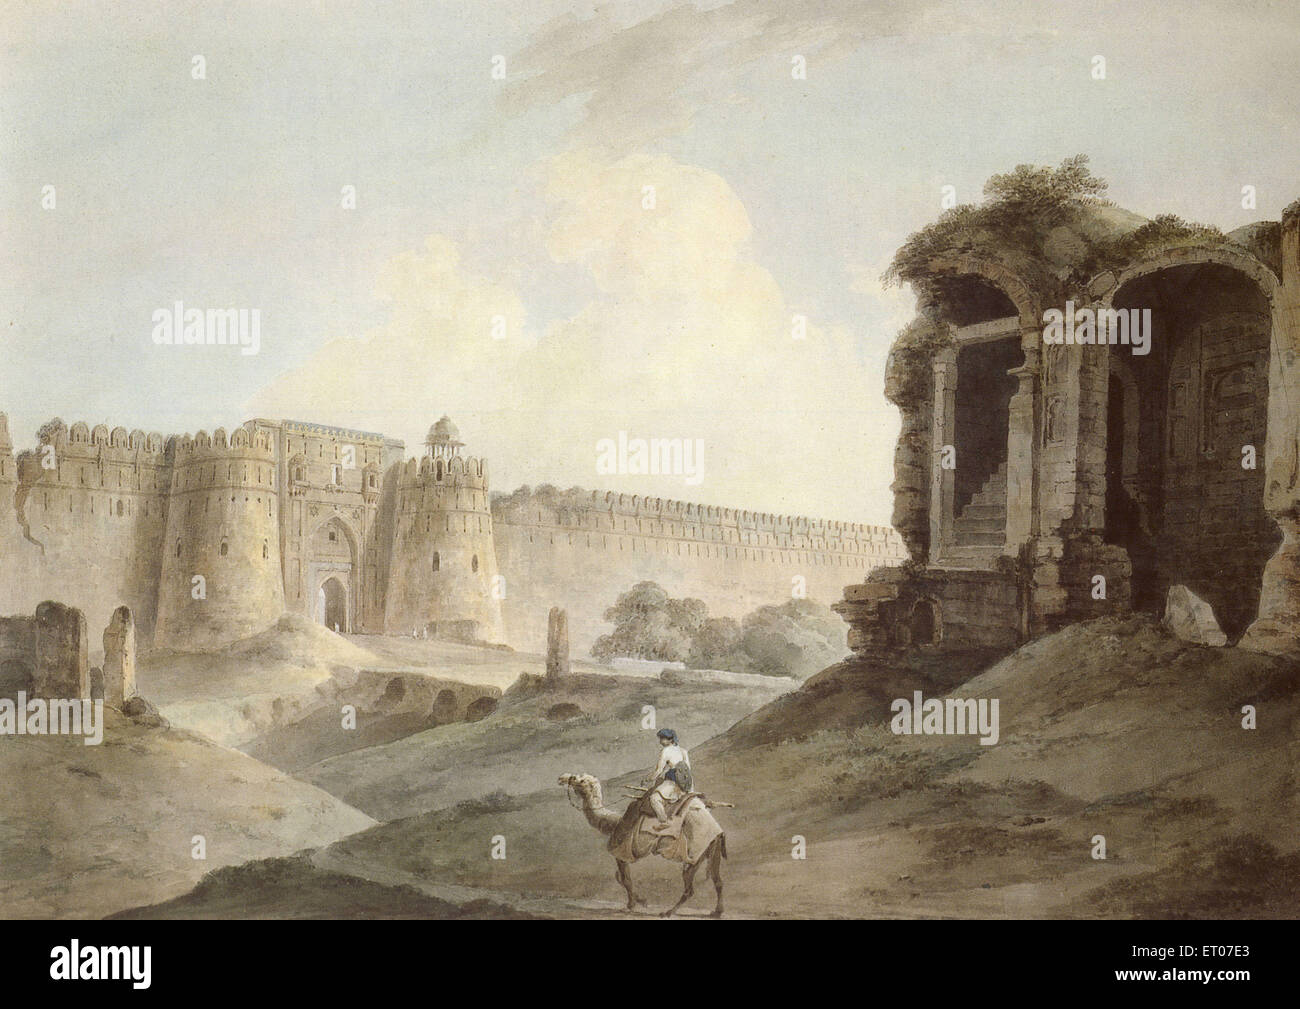 Purana Qila, Old Fort, Shergerh & Sher Fort, il più antico forte di Delhi, cavaliere di cammelli, Delhi, India, Asia, vecchia immagine del 1800 Foto Stock